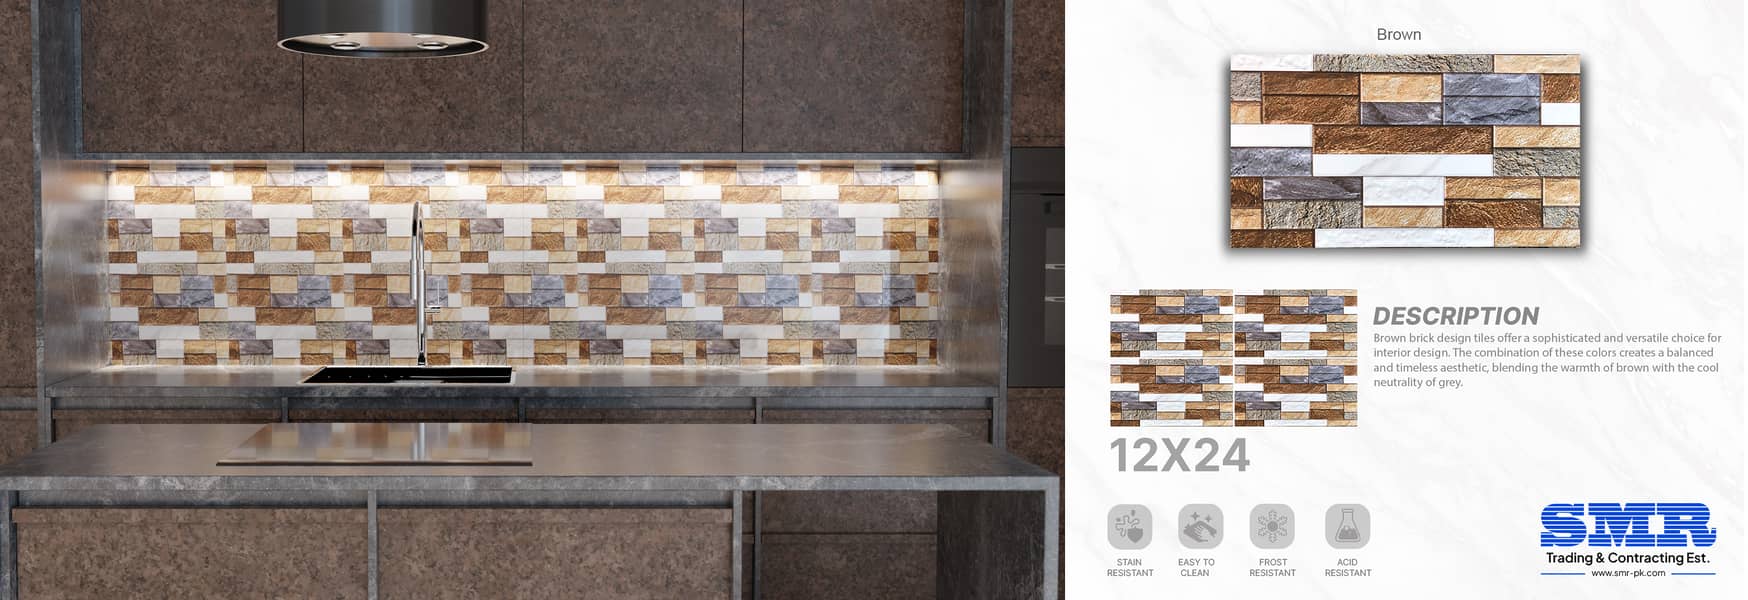 12x24 kitchen tiles 8